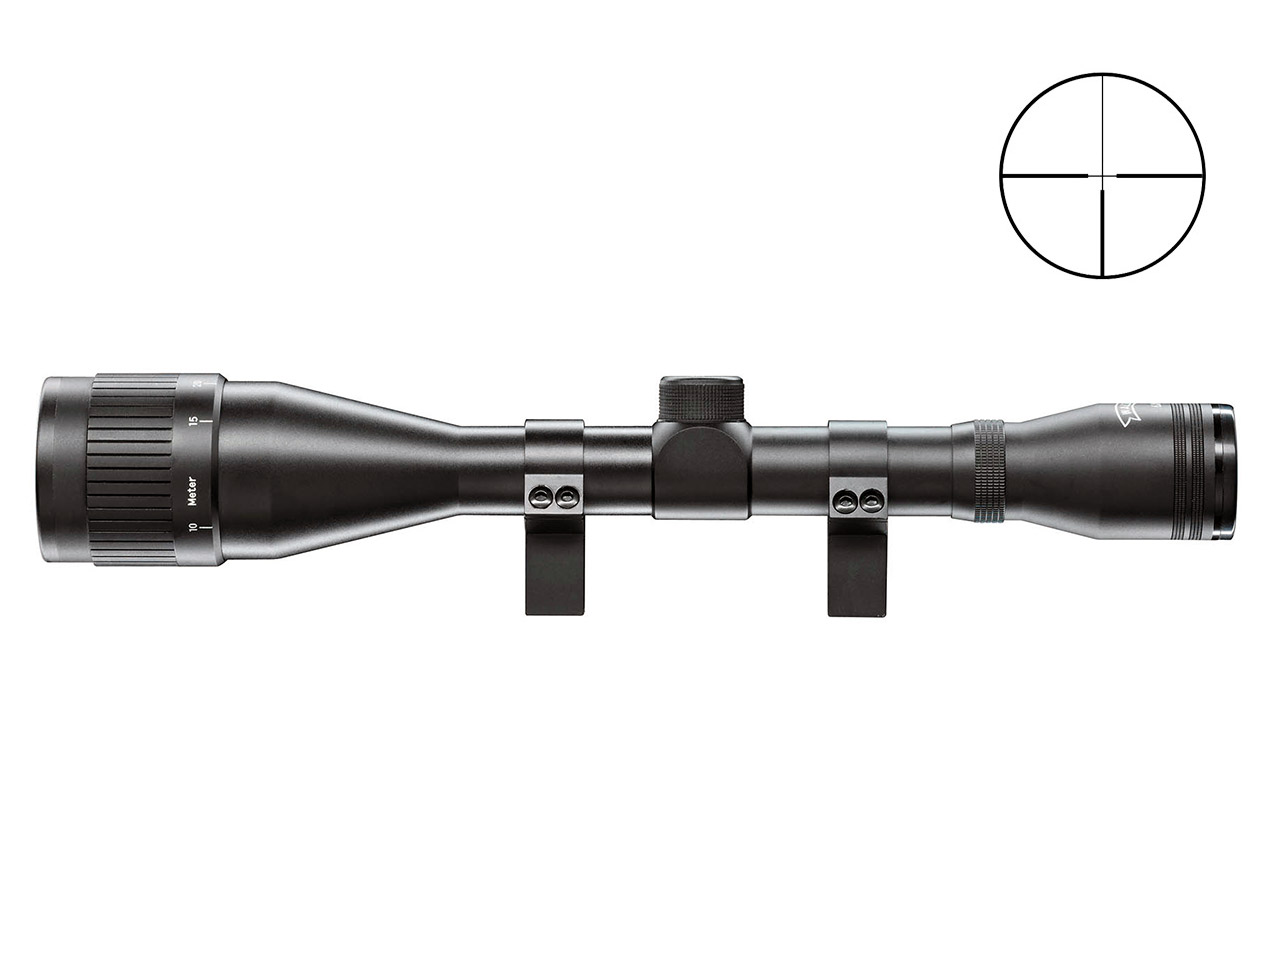 Zielfernrohr Walther 6x42 Absehen 4 Parallaxeverstellung am Objektiv 1 Zoll Tubus inklusive Ringmontagen für 11 mm Prismenschienen